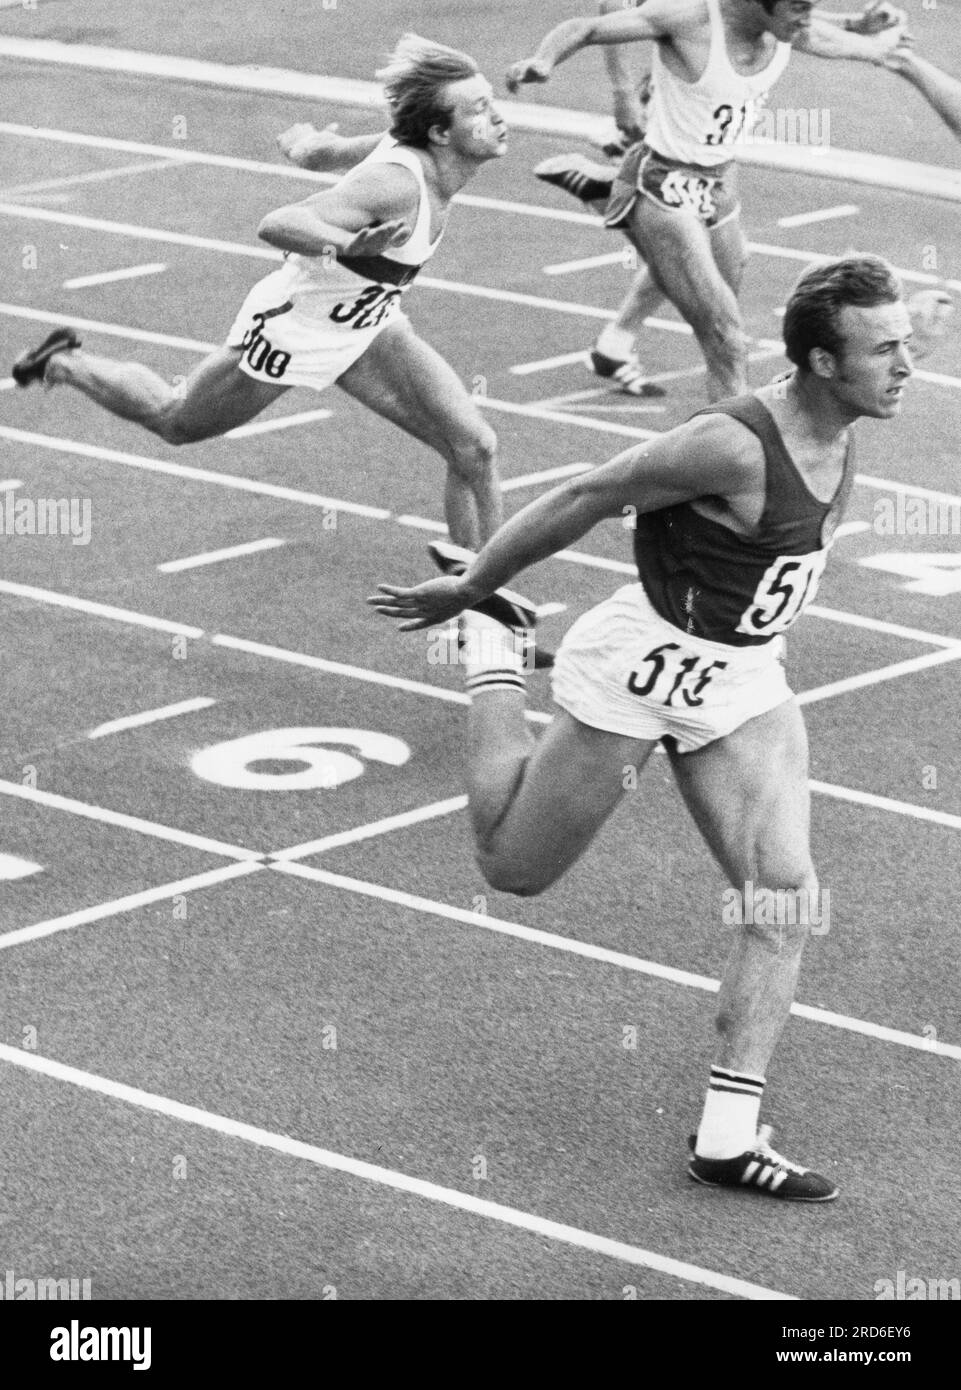 Sports, athlétisme, Championnat d'Europe 1971, course à pied, 100 mètres, INFOS-AUTORISATION-DROITS-SUPPLÉMENTAIRES-FINALES NON-DISPONIBLES Banque D'Images